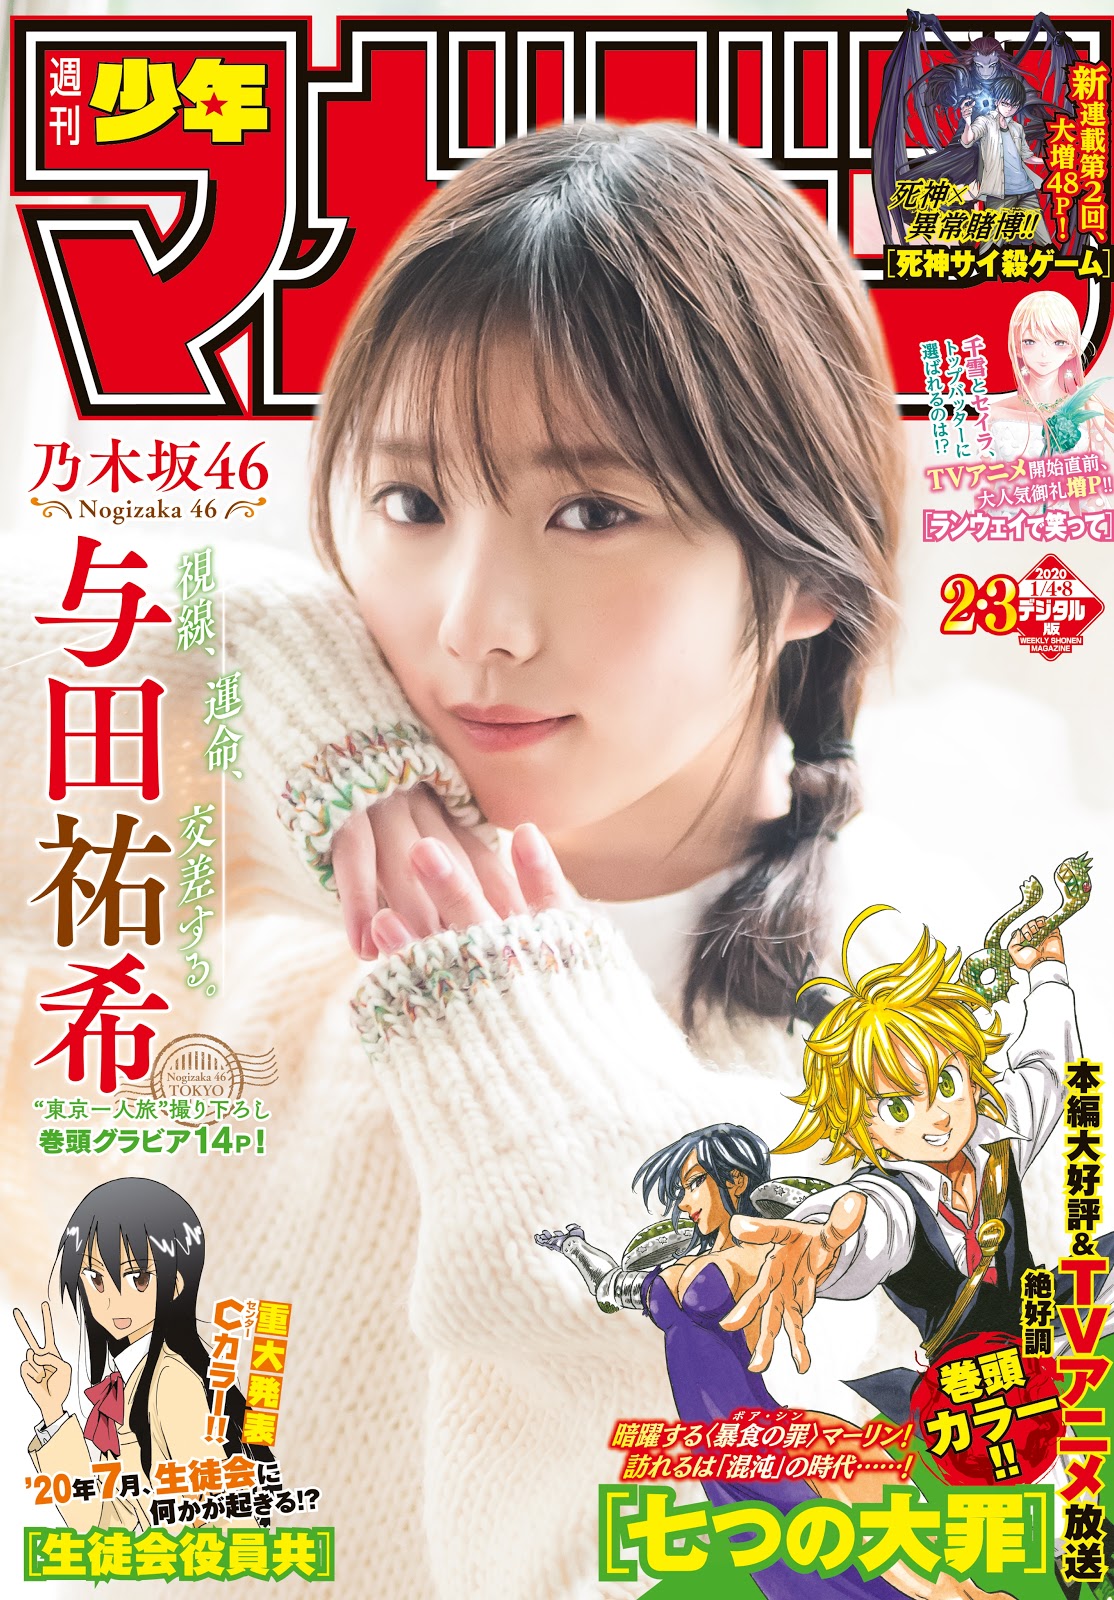 Yuki Yoda 与田祐希, Shonen Magazine 2020 No.02-03 (少年マガジン 2020年2-3号)